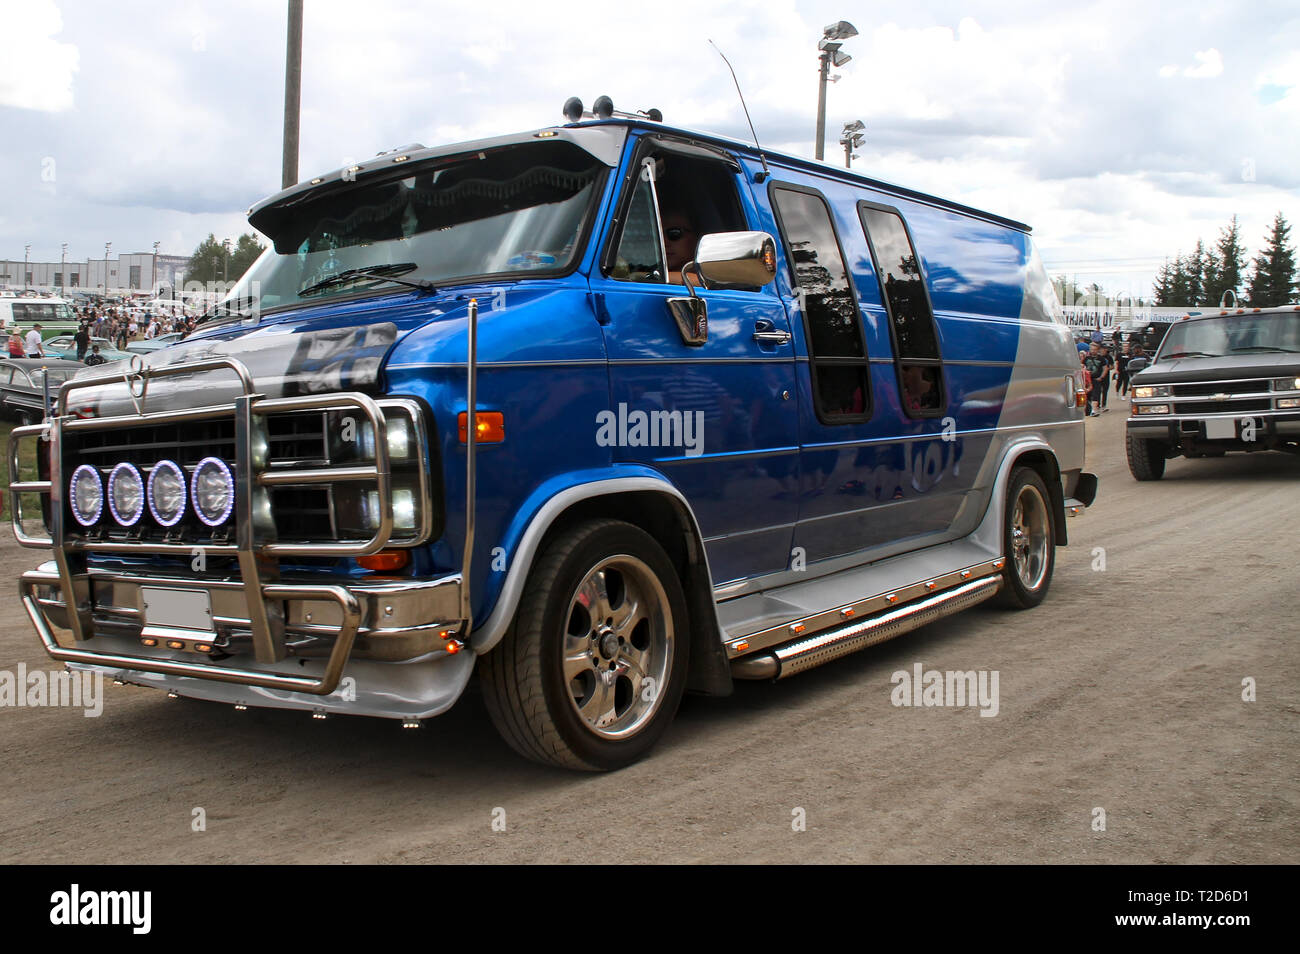 Chevrolet chevy van immagini e fotografie stock ad alta risoluzione - Alamy